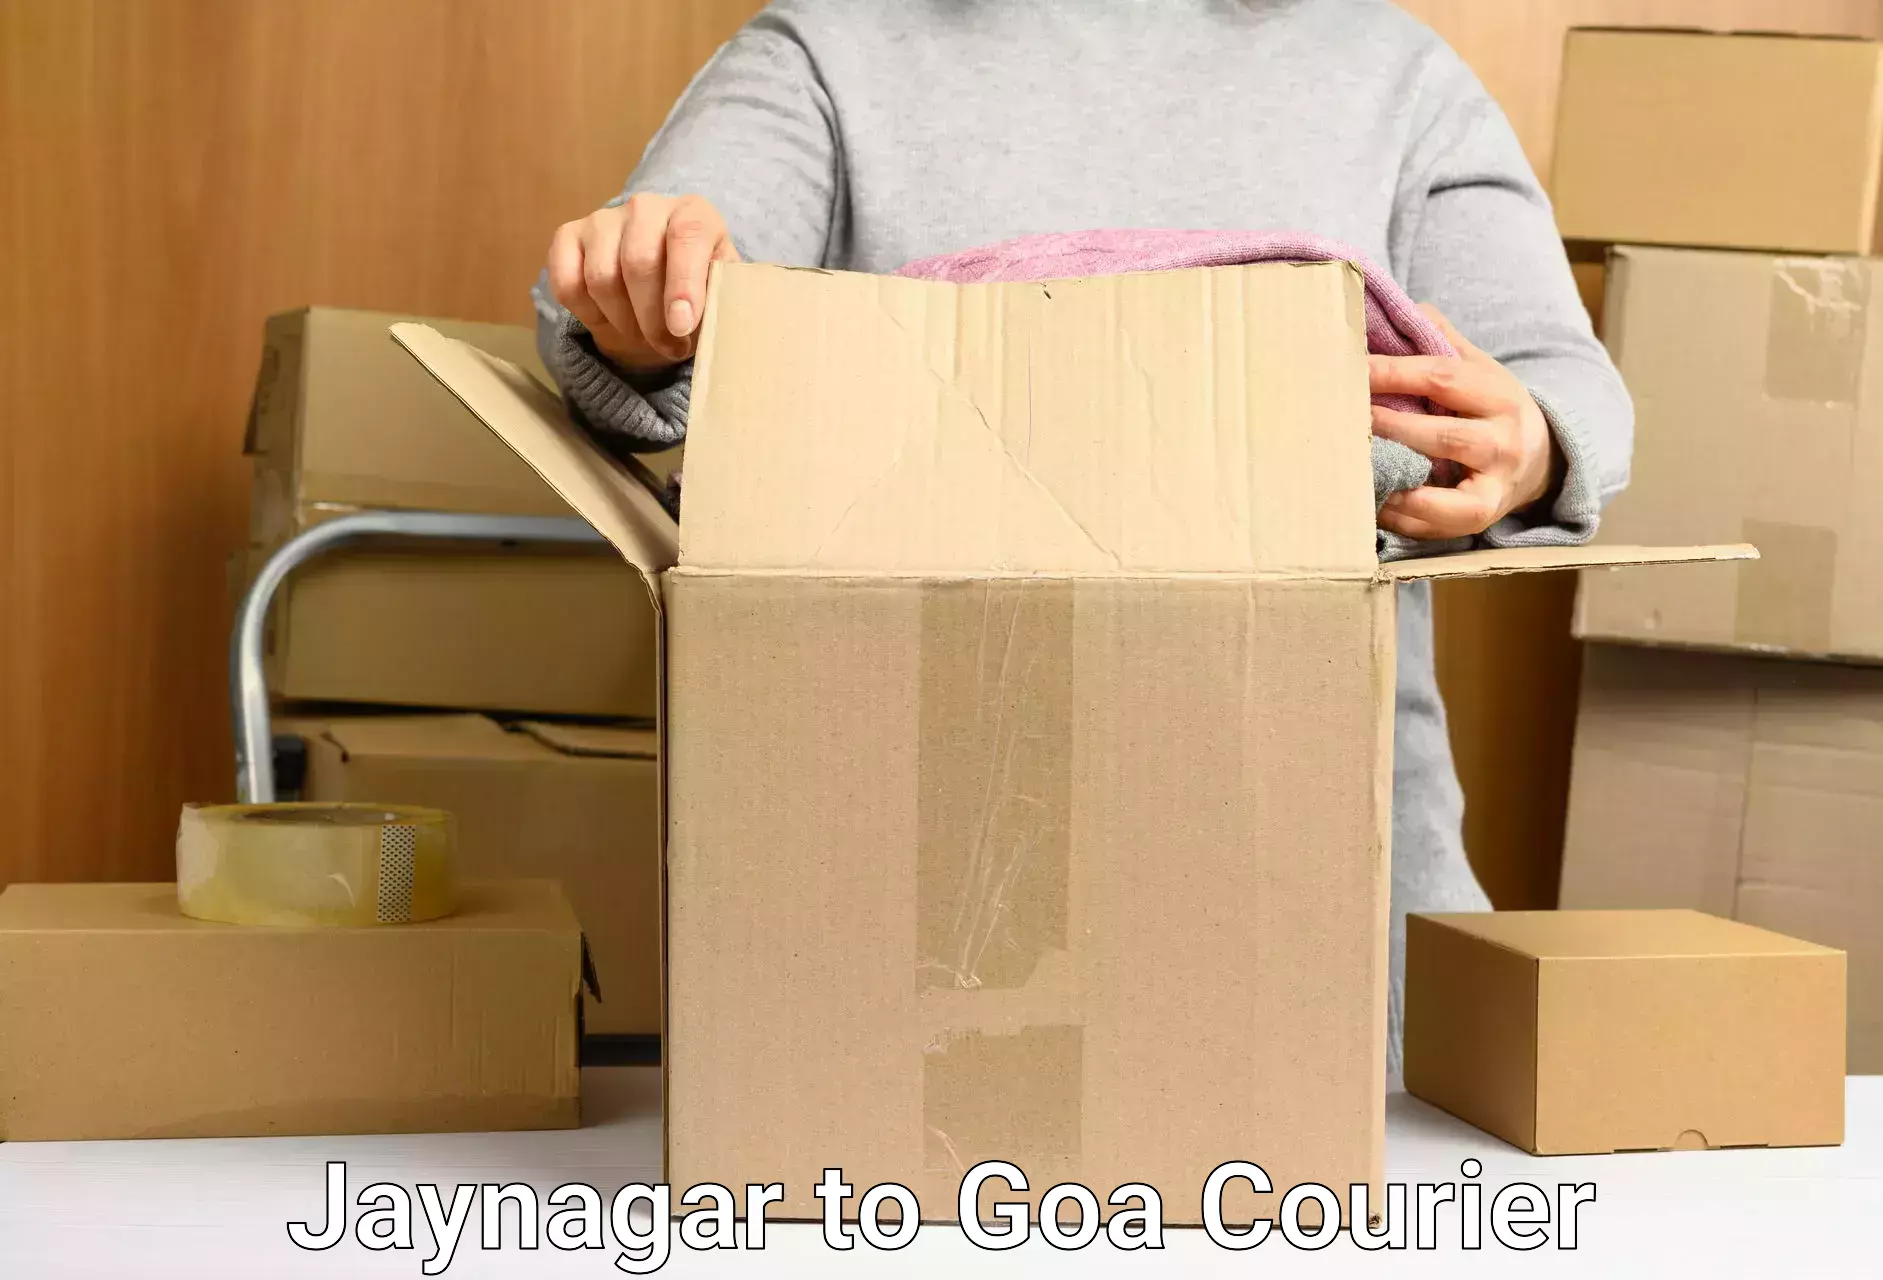 Multi-package shipping Jaynagar to NIT Goa